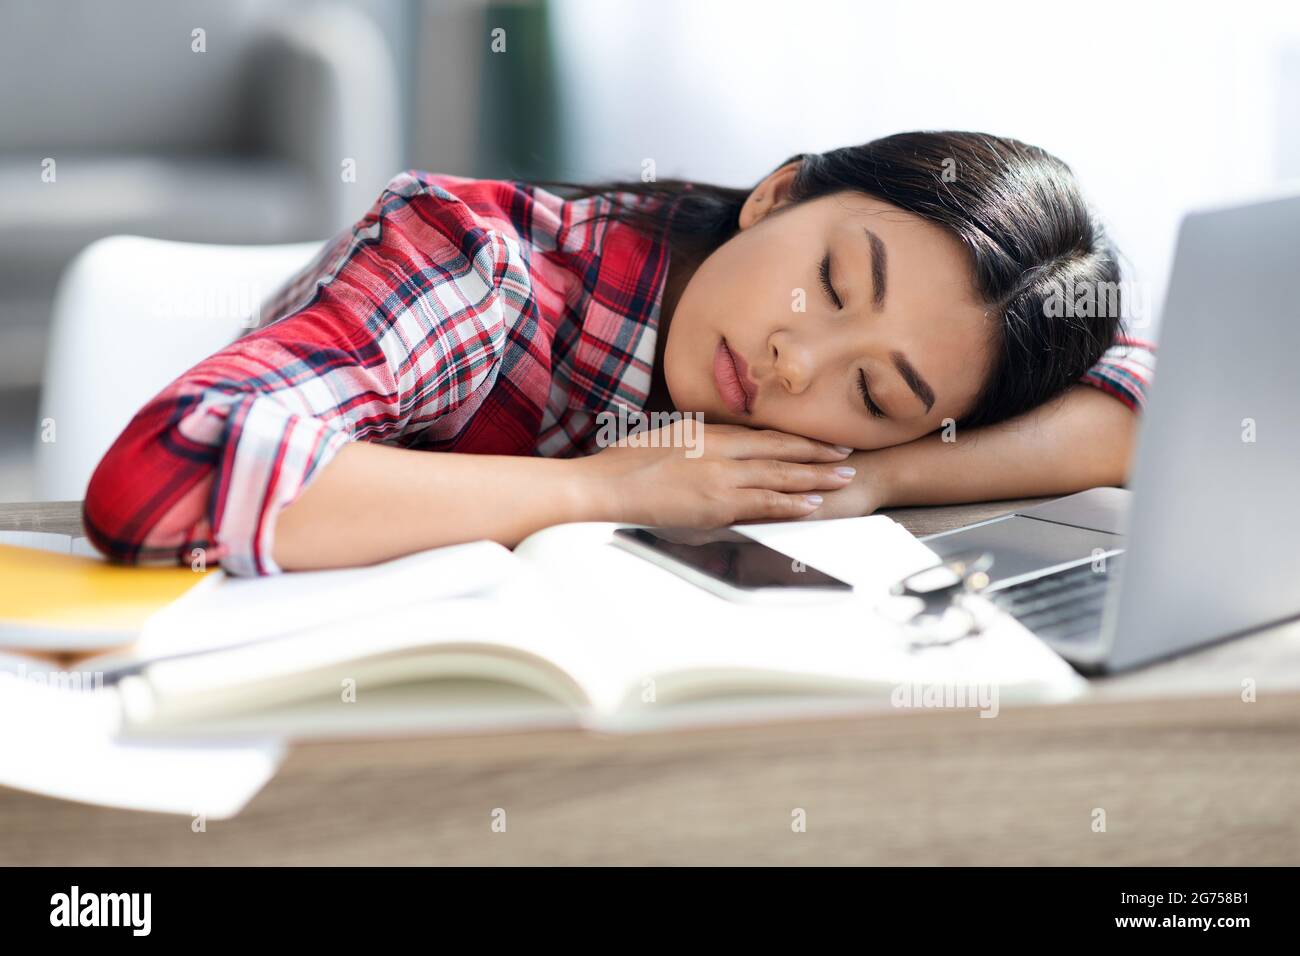 Сплю со студенткой. Прическа спящий студент. Chinese sleeping student at the Desk. Фото я измученная.